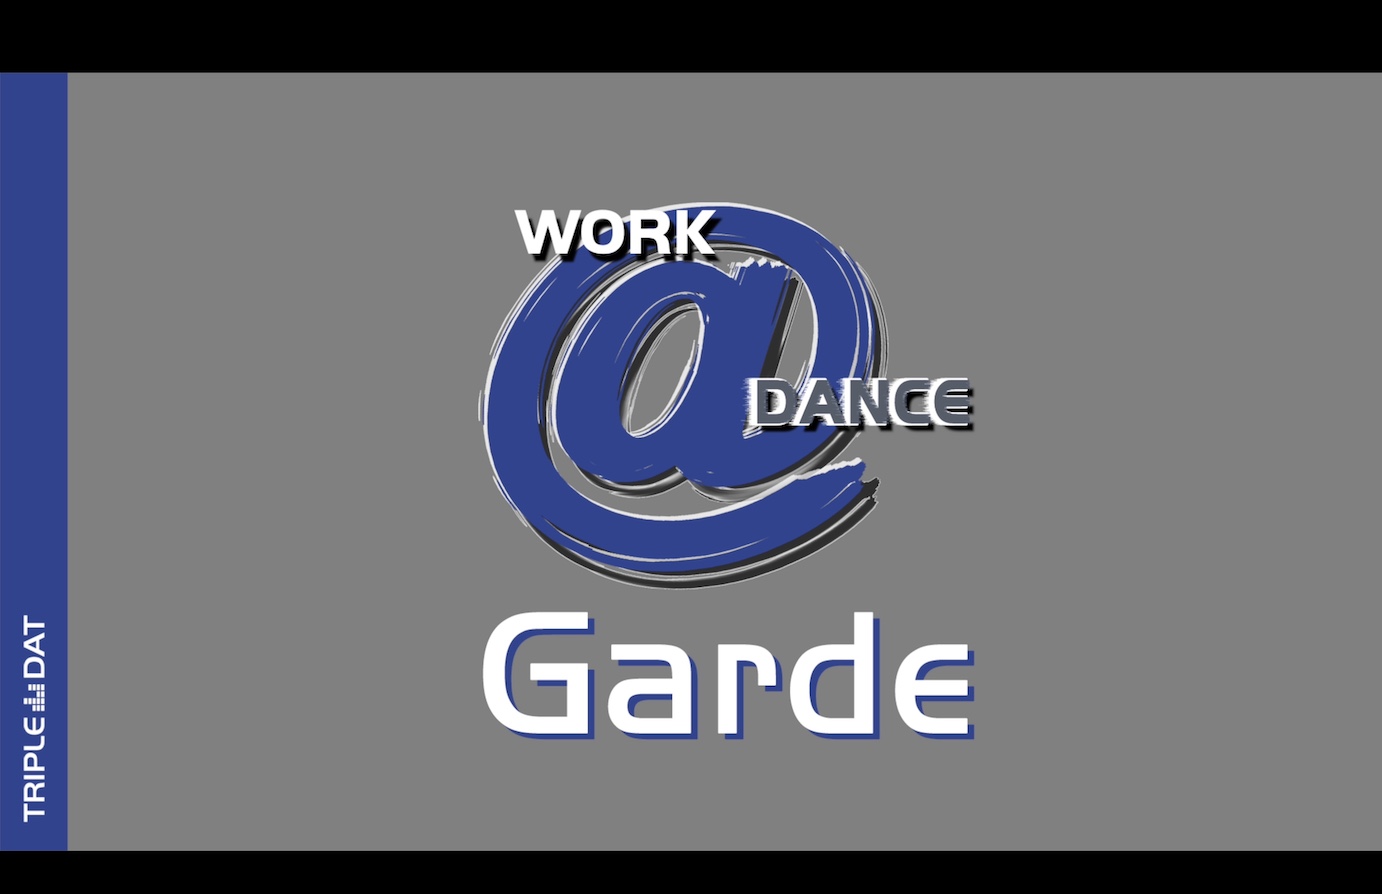 Work@Dance Garde Schrittkombinationen 03 - Basic